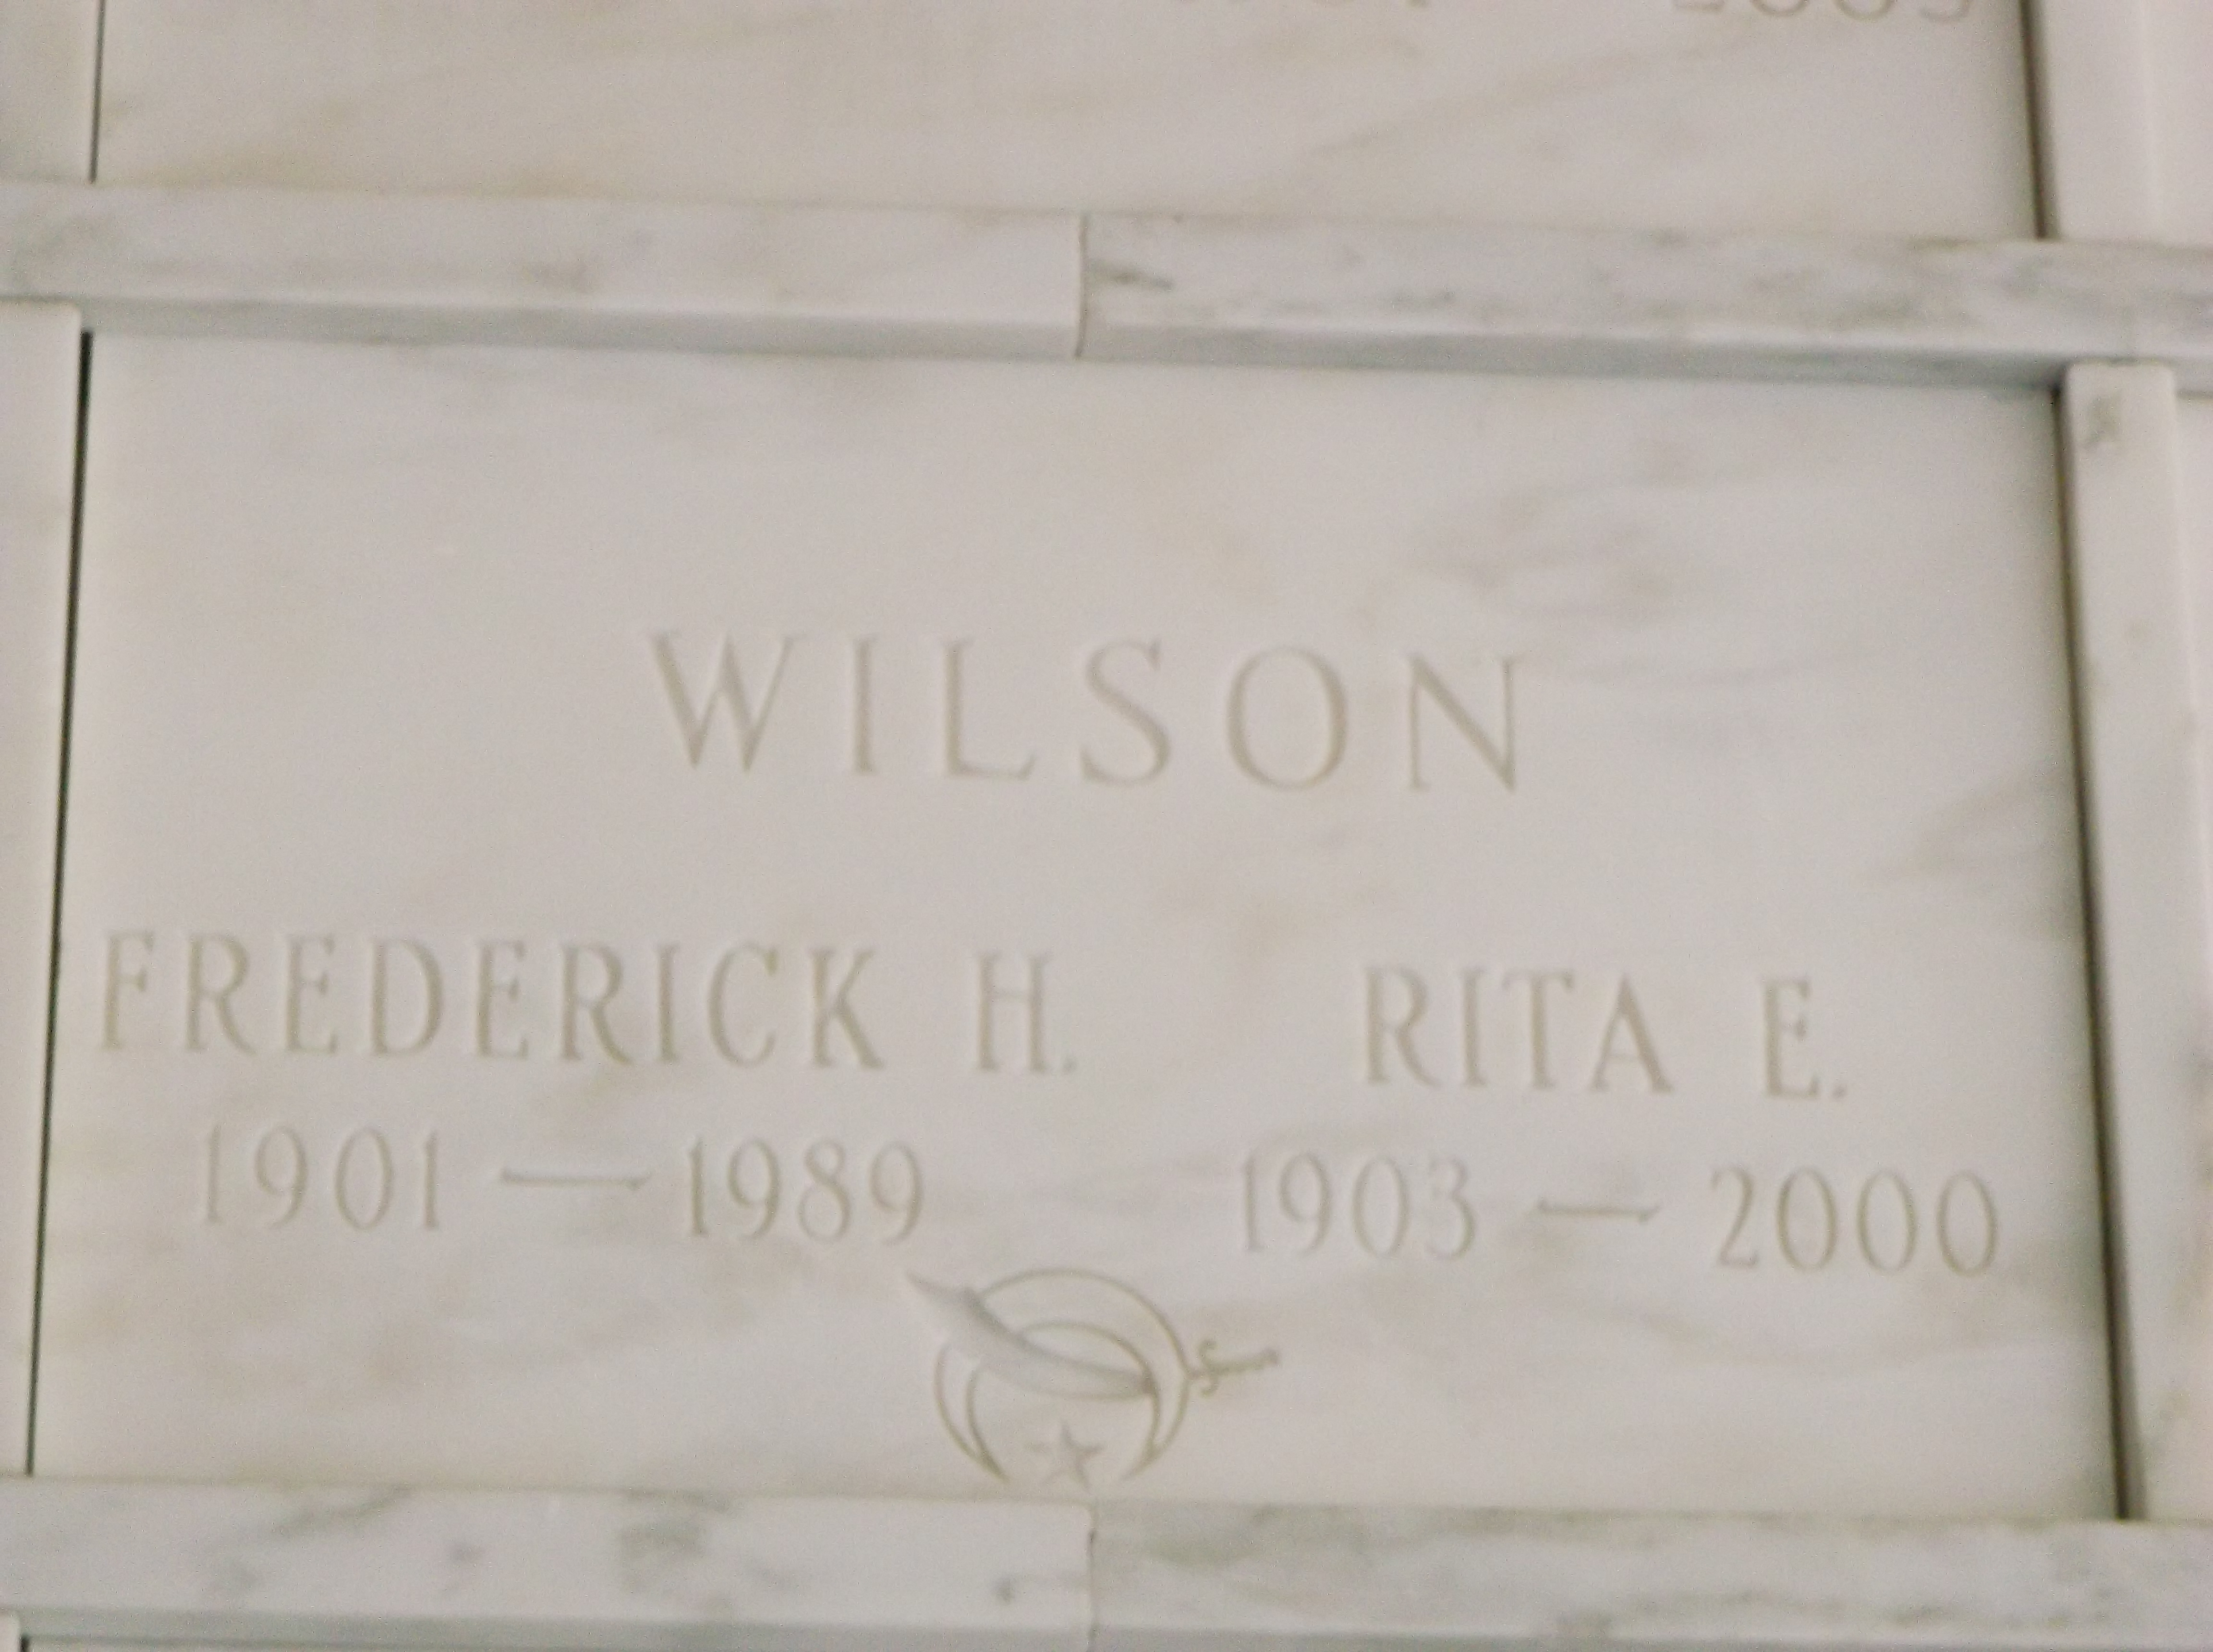 Rita E Wilson